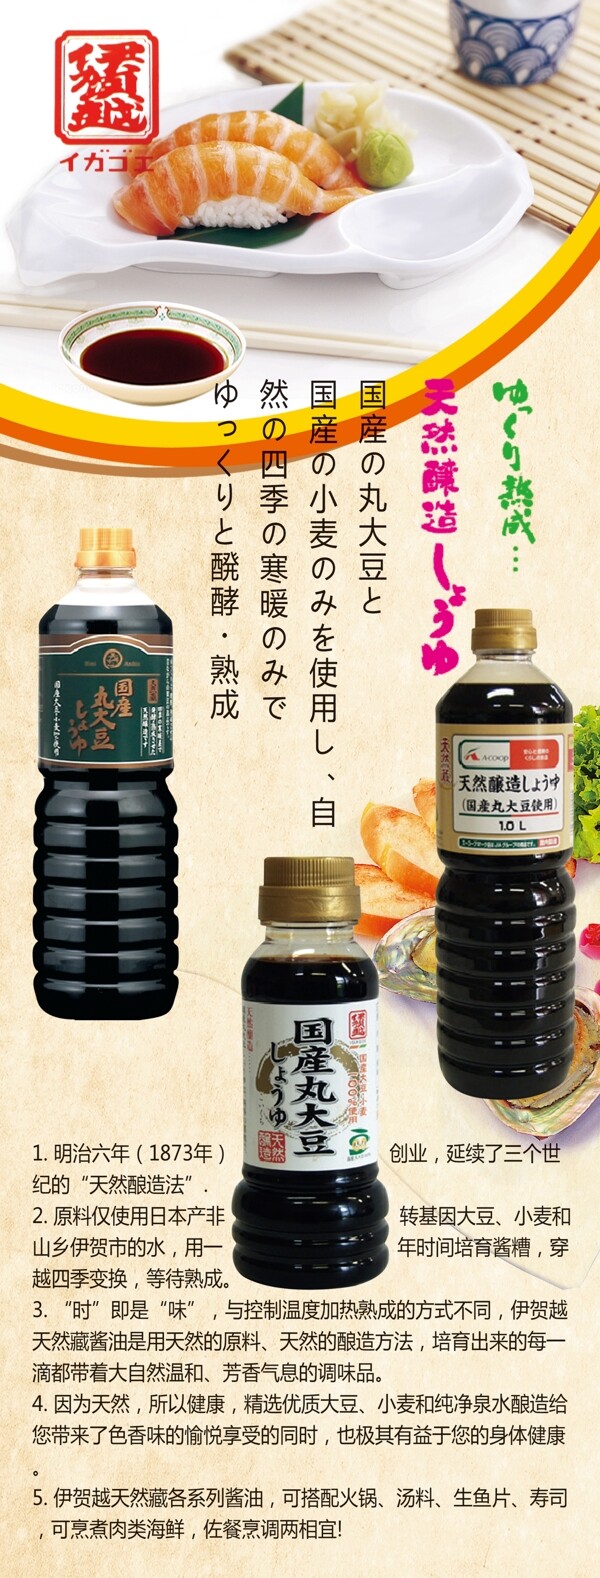 日本酱油展架